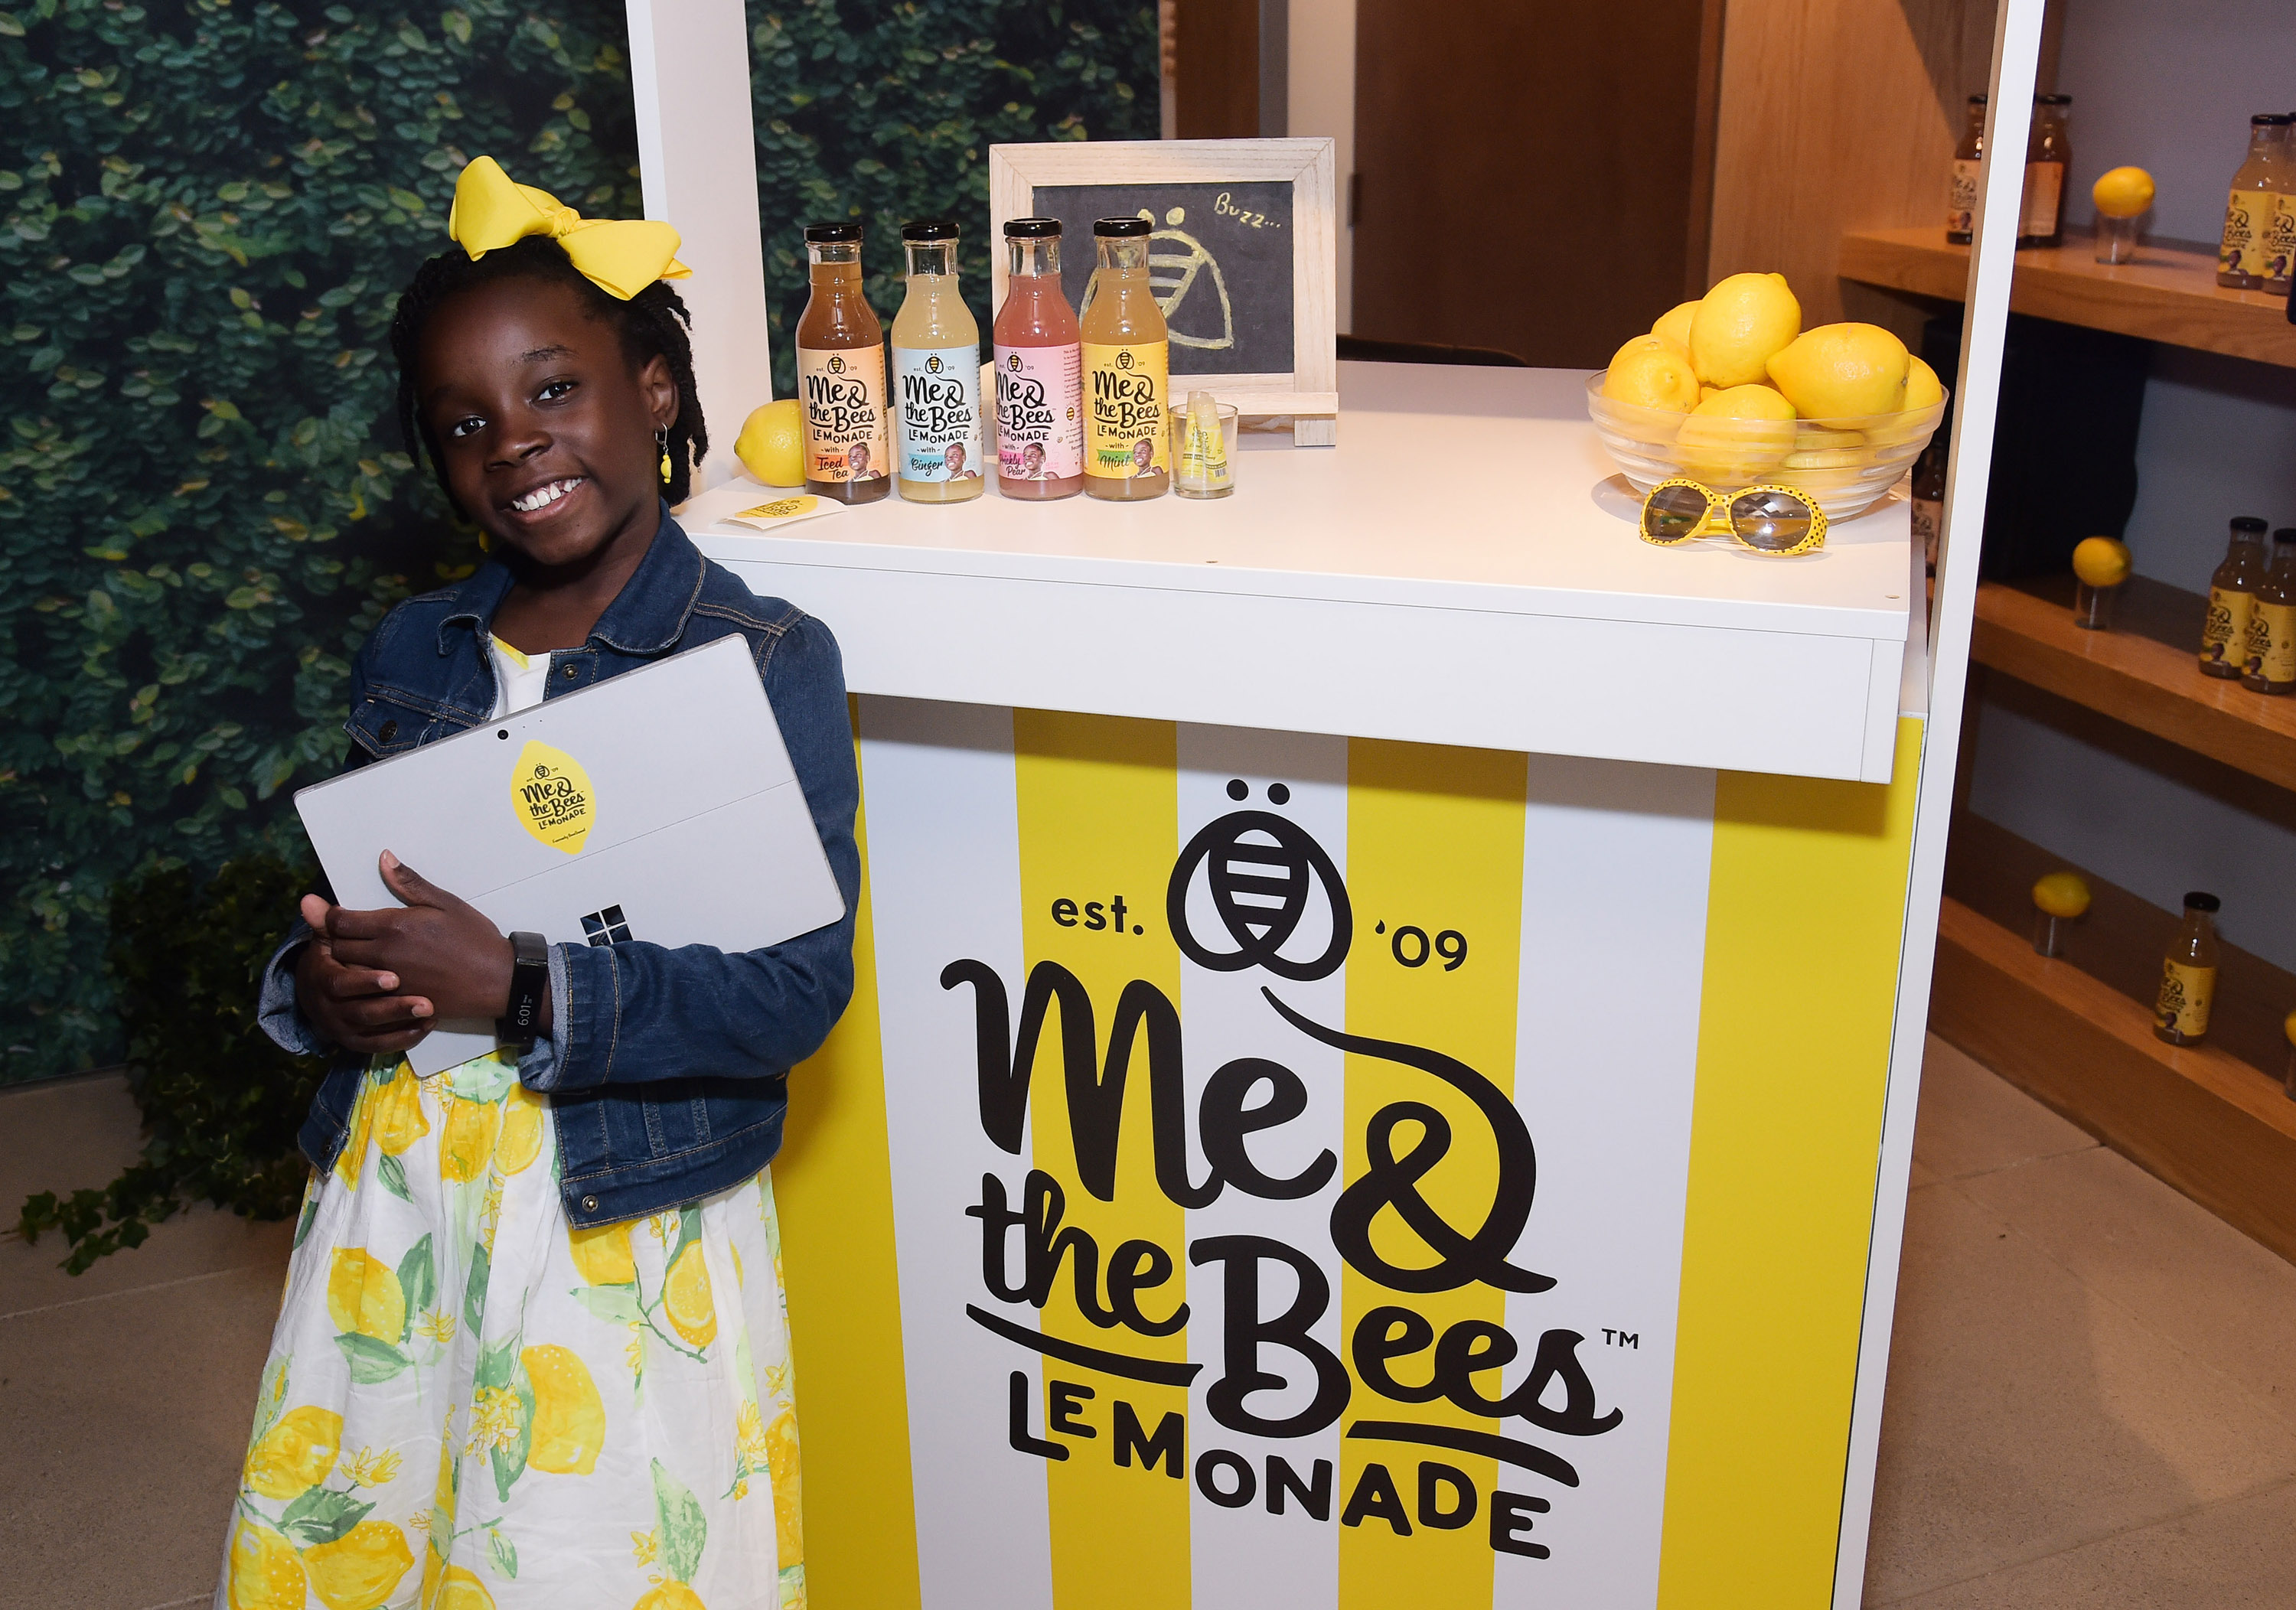 Mikaila Ulmer Niña Empresaria, Me & The Bees Lemonade, Empresa Limonada Niña Estados Unidos, Niños Emprendedores, Niños Empresarios, Limonadas,